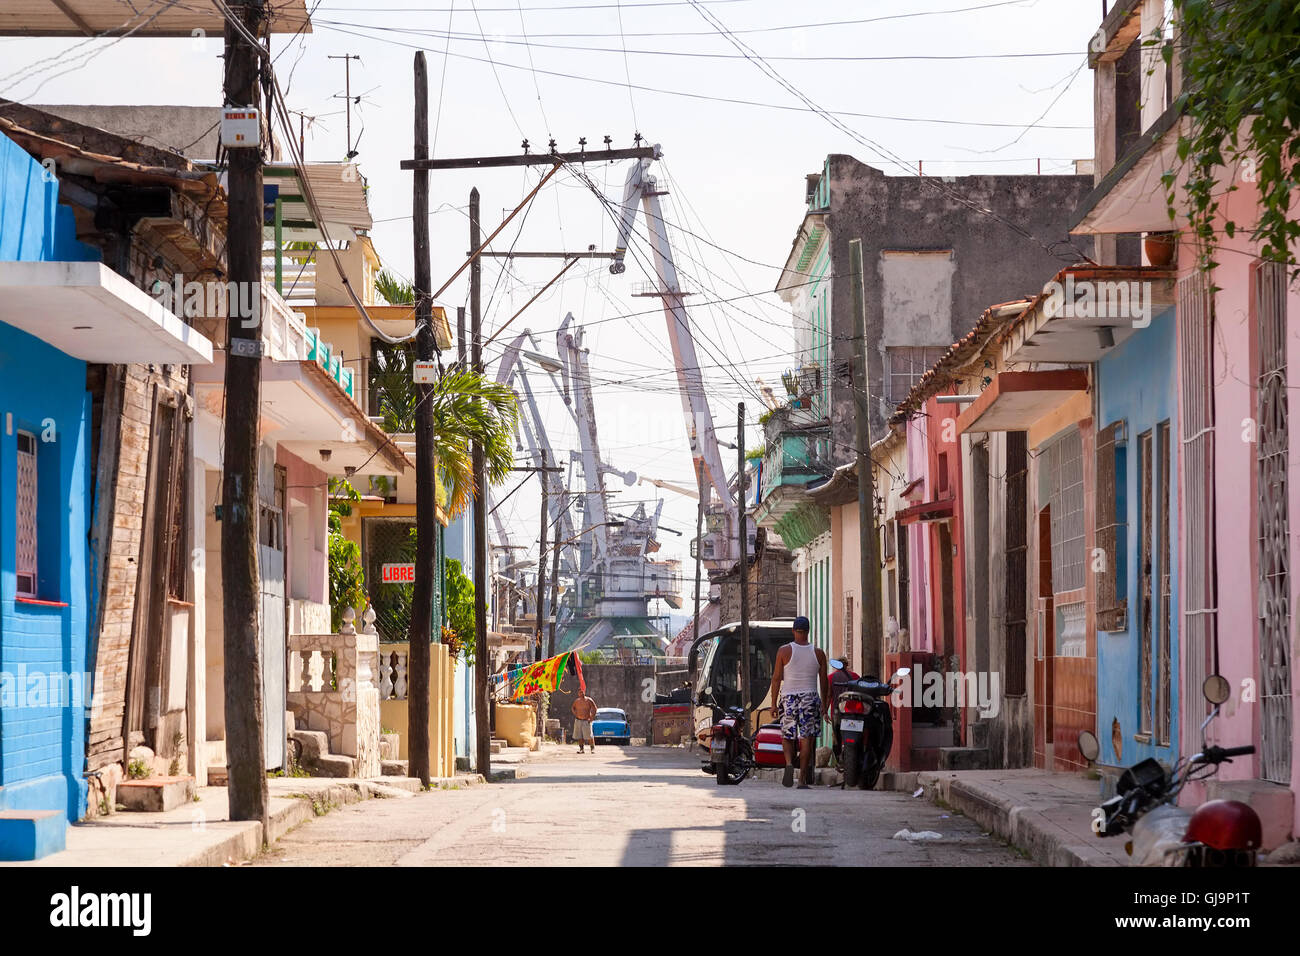 L'industrie lourde en bordure d'un quartier de la municipalité de Regla, La Havane, Cuba. Banque D'Images